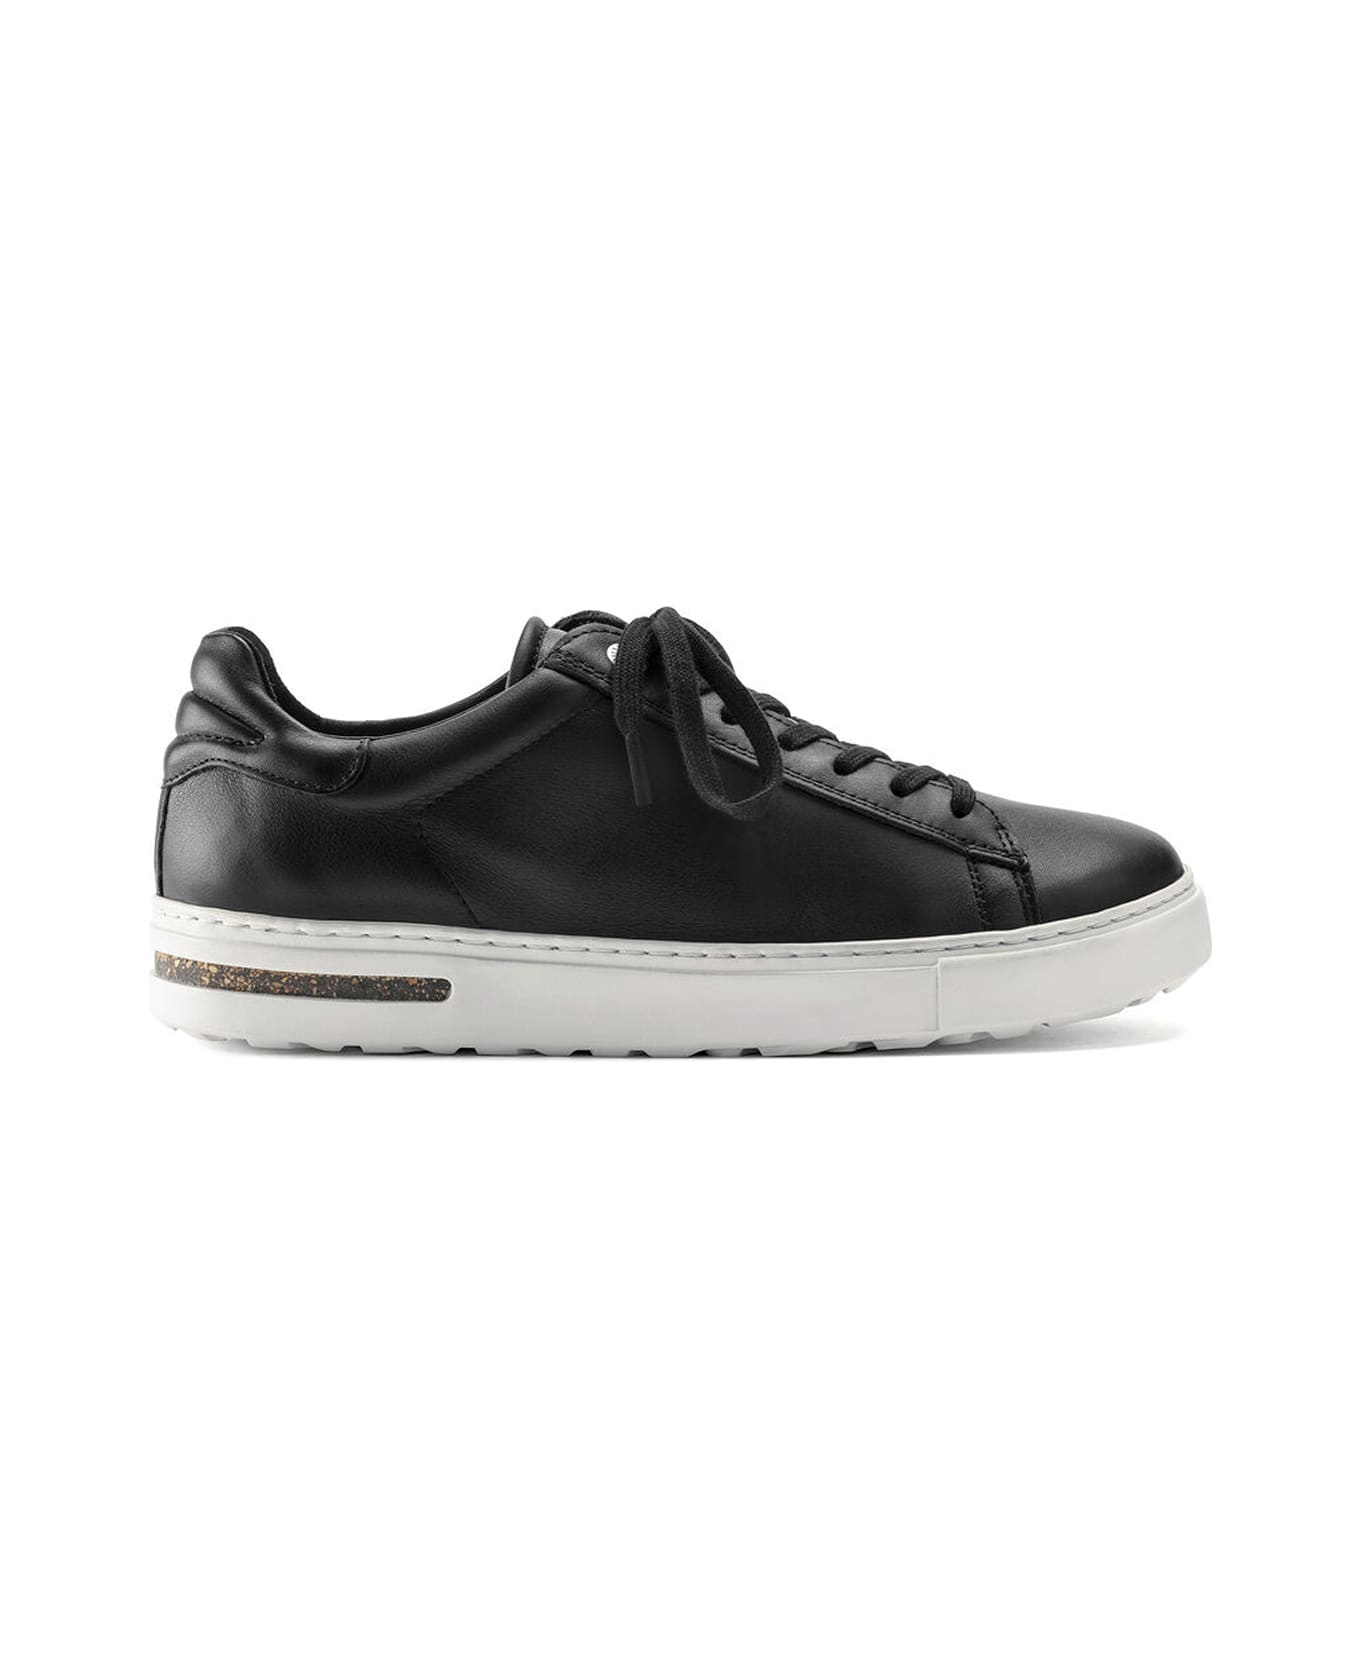 Birkenstock Sneakers - Black